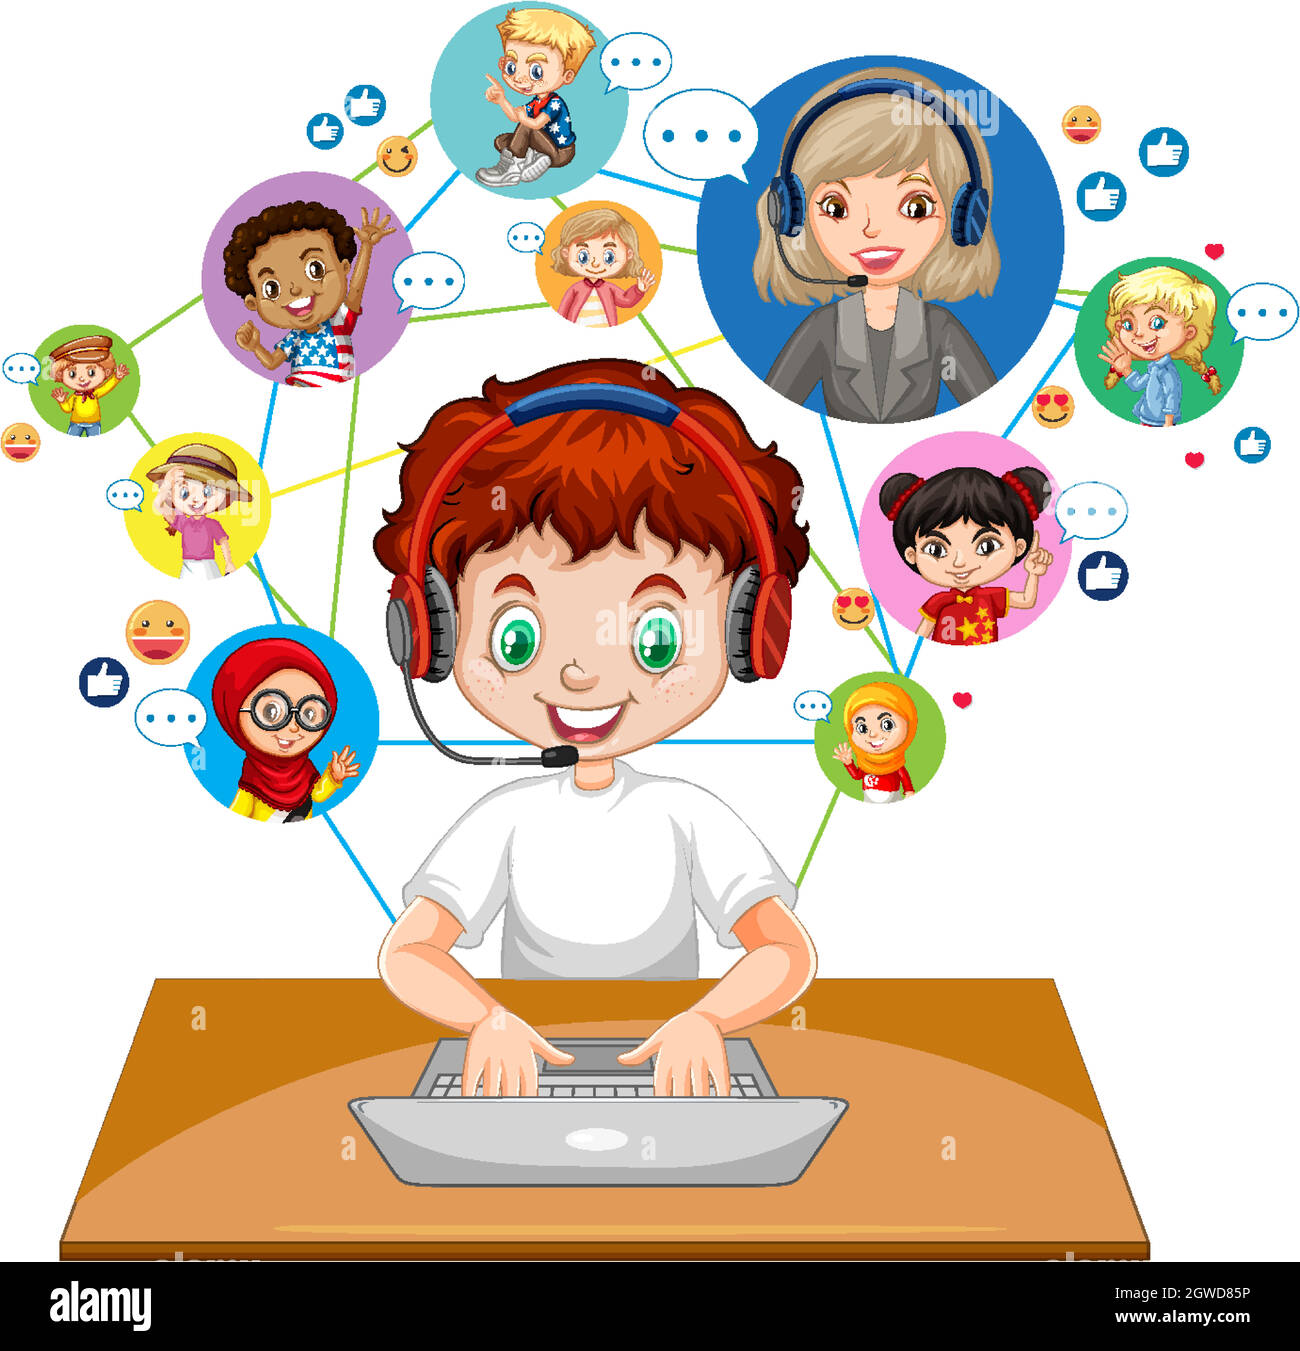 Vista frontale di un ragazzo che utilizza un computer portatile per comunicare la videoconferenza con l'insegnante e gli amici su sfondo bianco Illustrazione Vettoriale